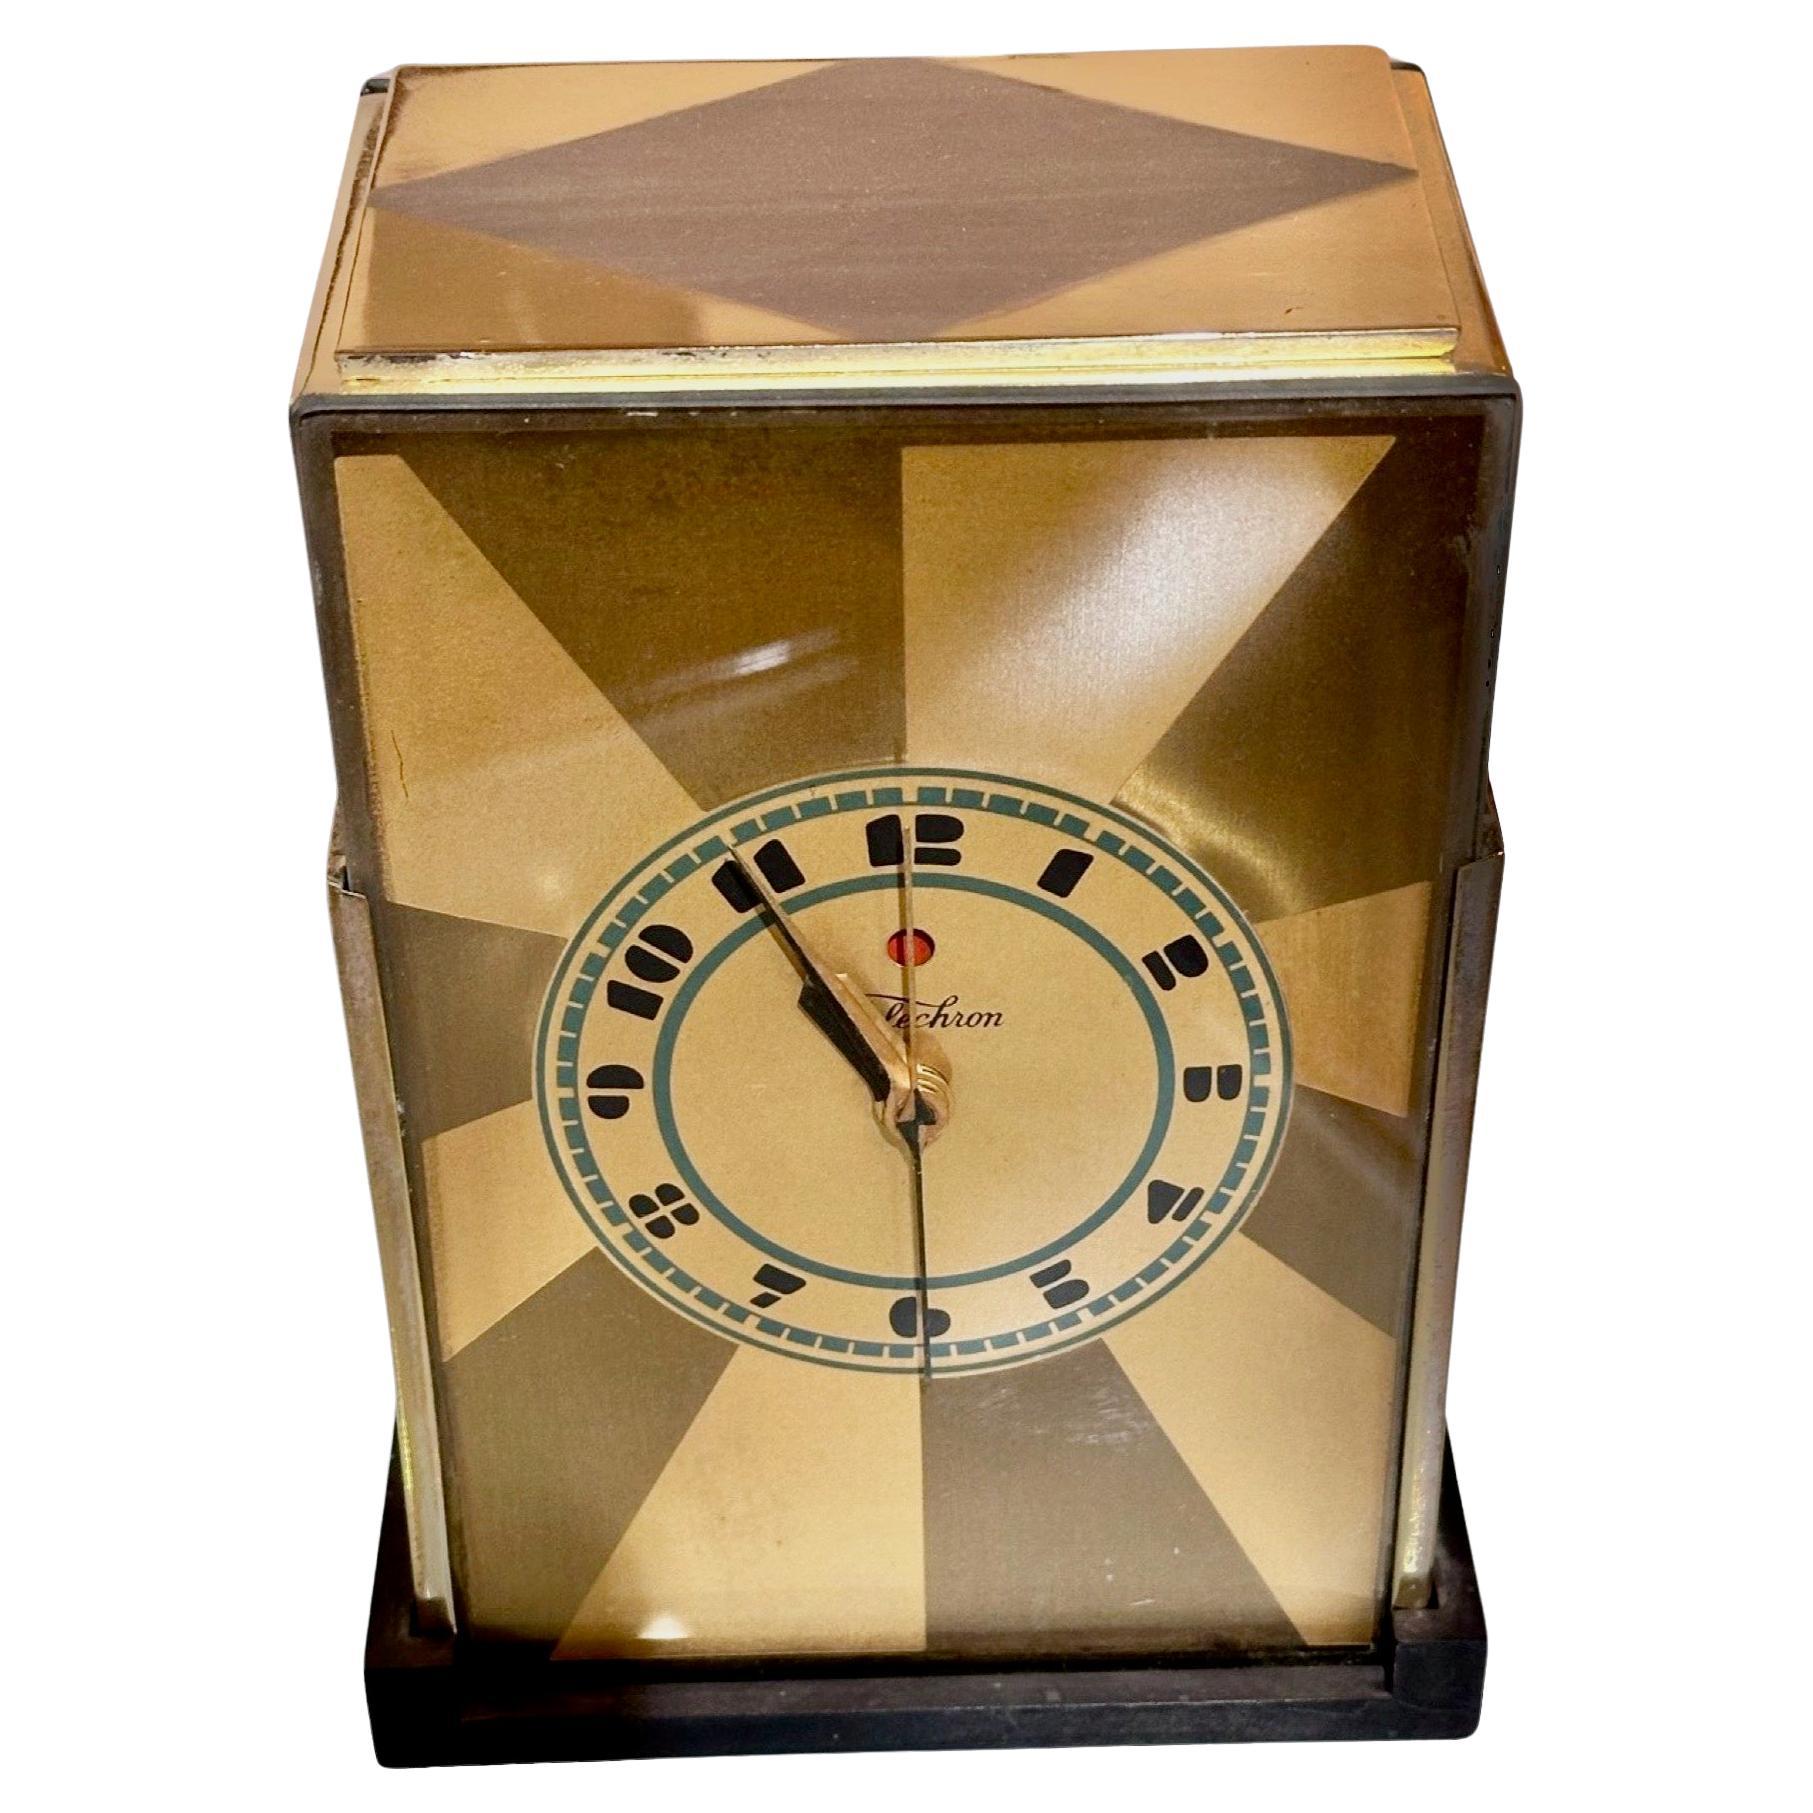 Modernique Telechron-Uhr von Paul Frankl, Art déco-Wolkenkratzer- Telechron-Uhr, 1928, Gold